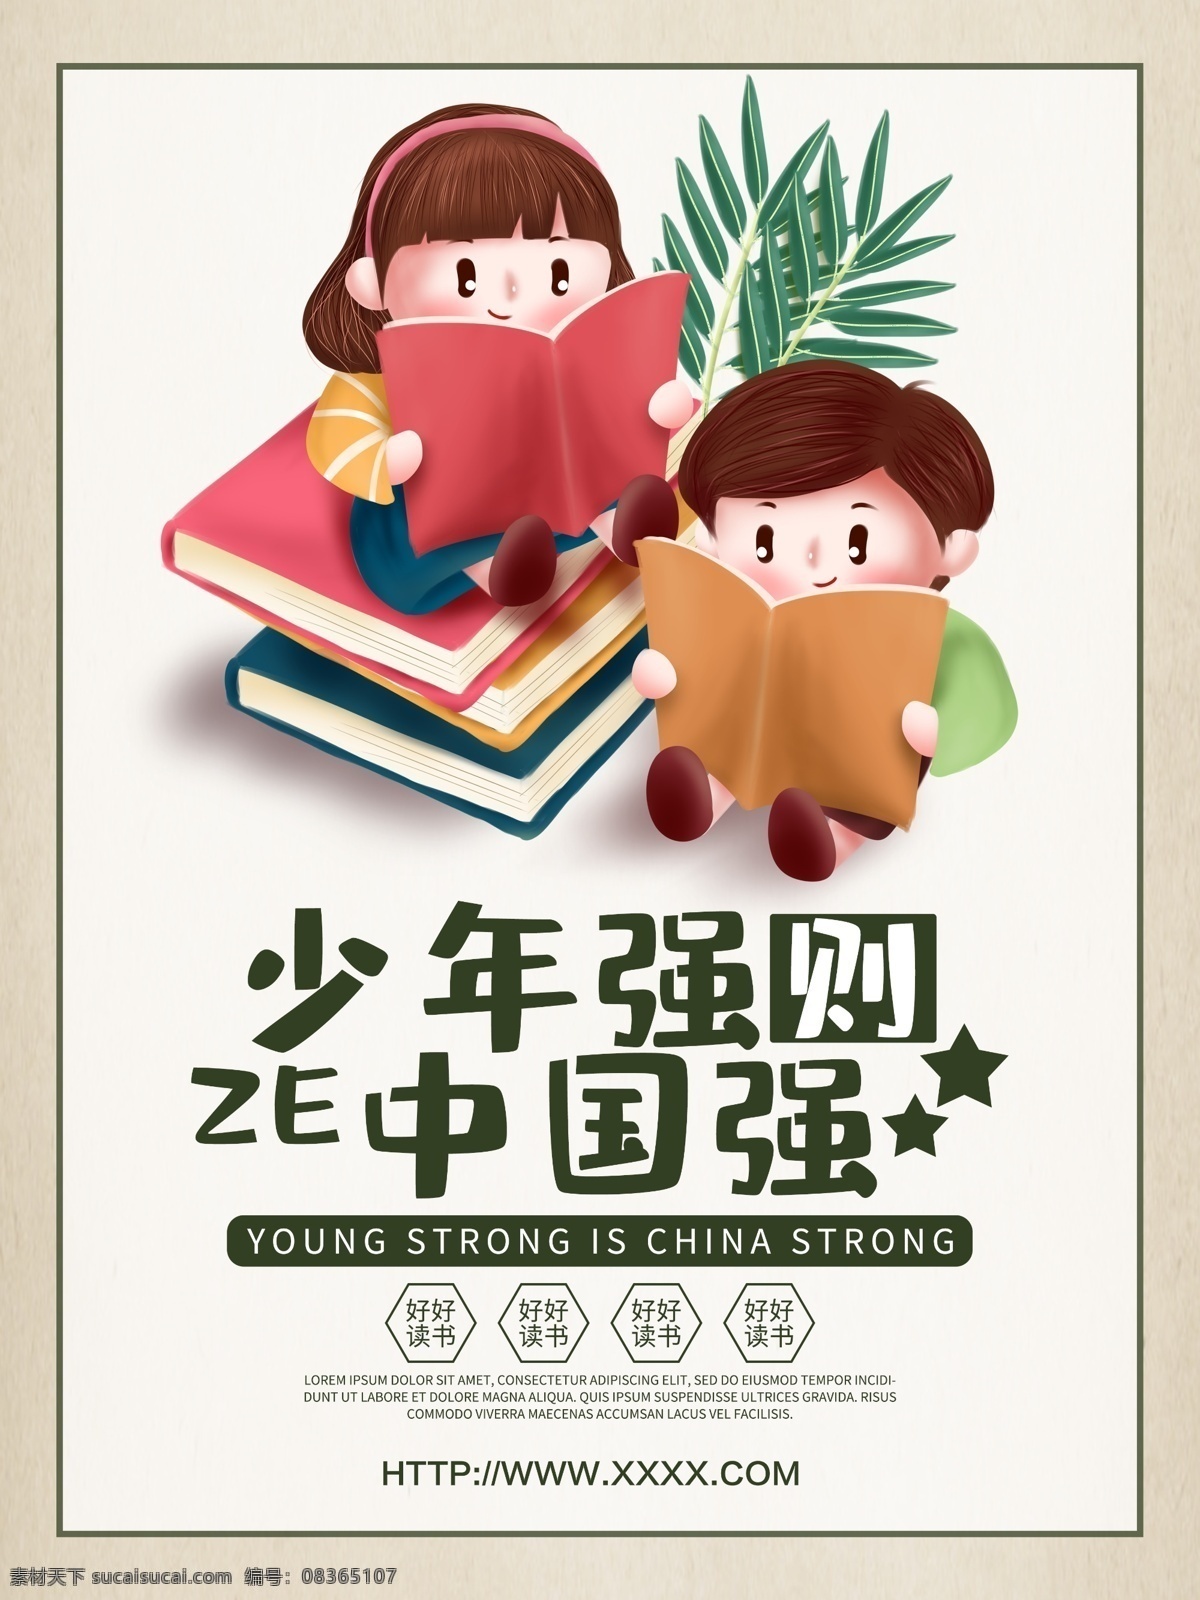 名人名言 展架展板 宣传栏 学校 校园文化 读书海报 少年强 中国强